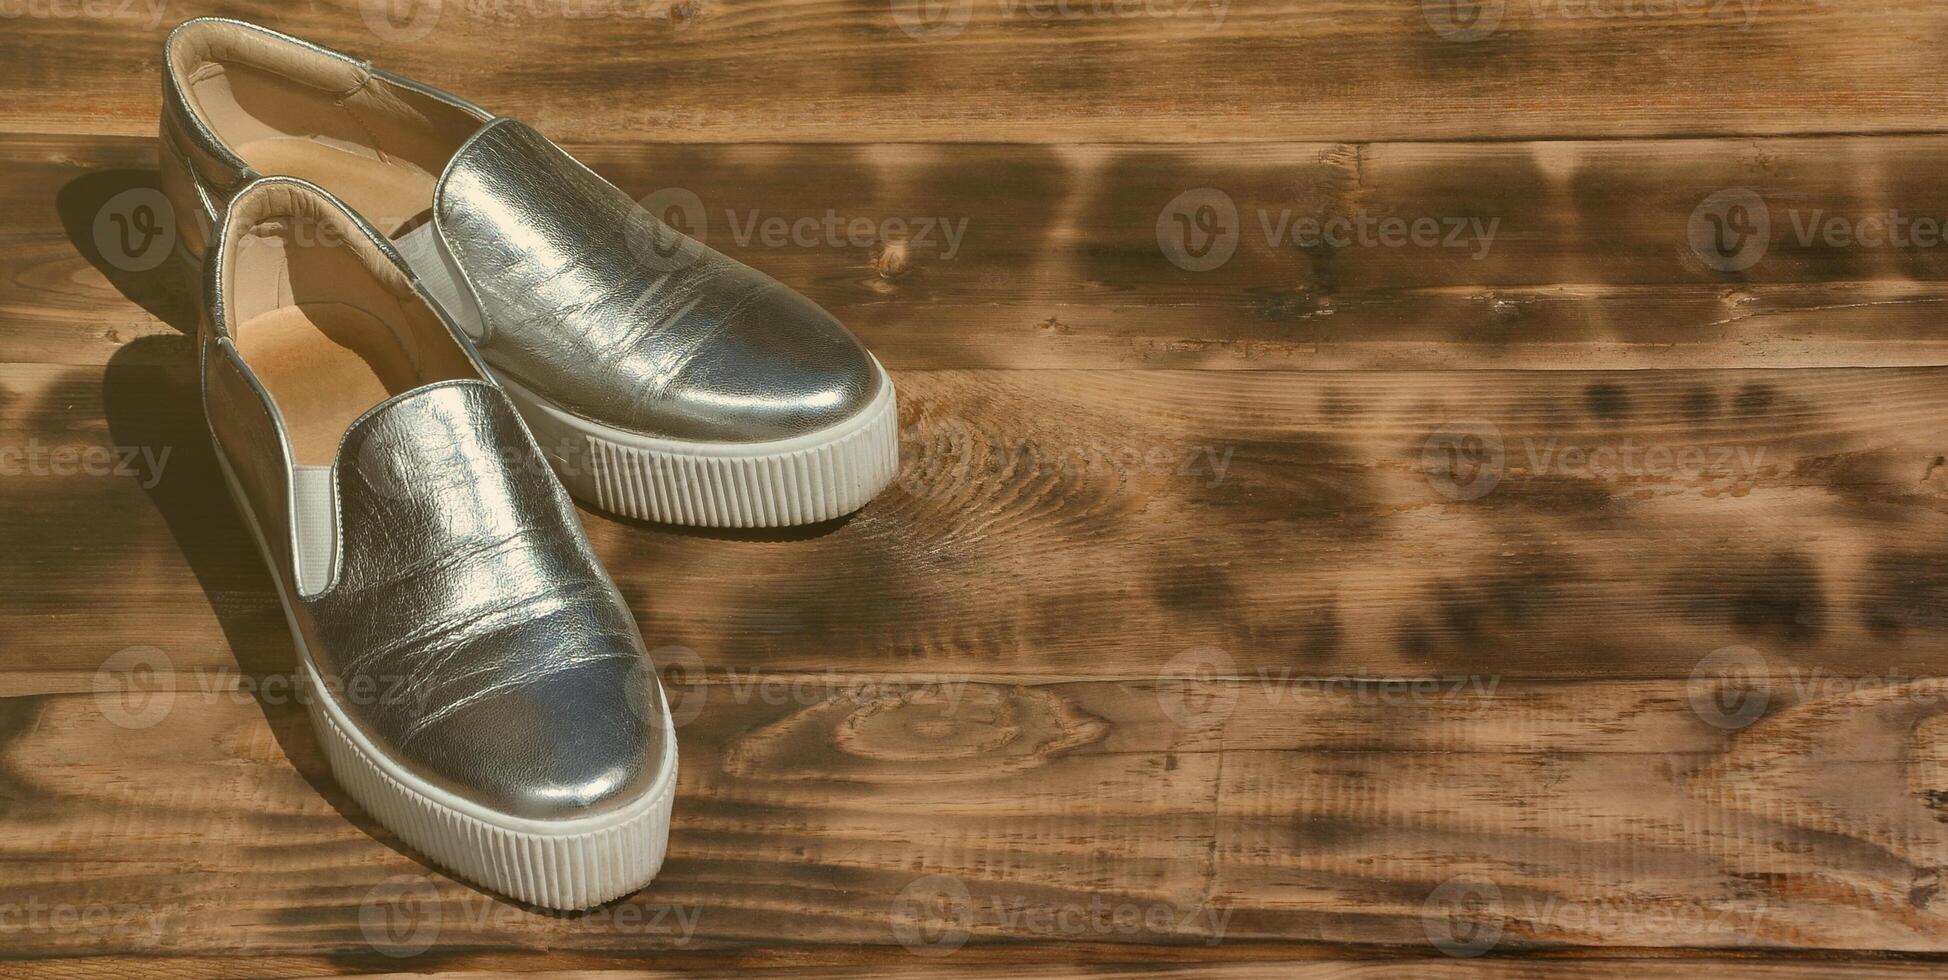 sapatos brilhantes originais em estilo disco encontram-se em uma superfície de madeira vintage feita de tábuas marrons fritas. acessório retrô de roupas da moda para discotecas e festas no estilo dos anos oitenta foto